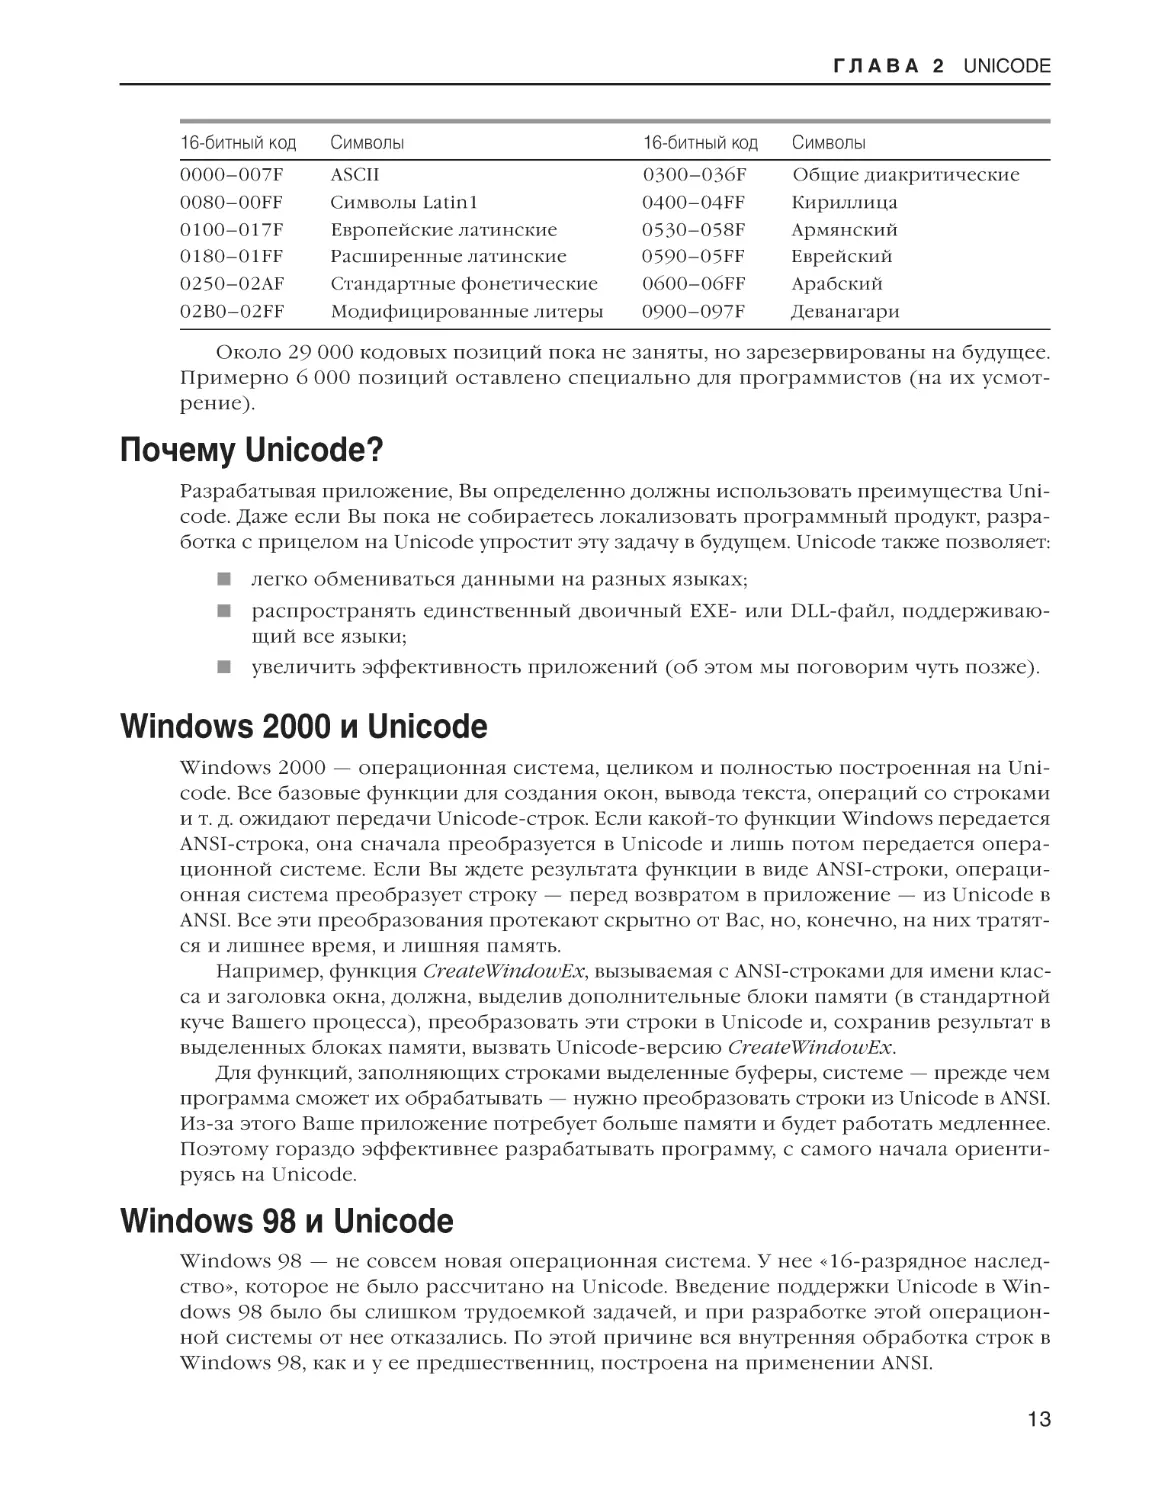 Почему Unicode?
Windows 2000 и Unicode
Windows 98 и Unicode